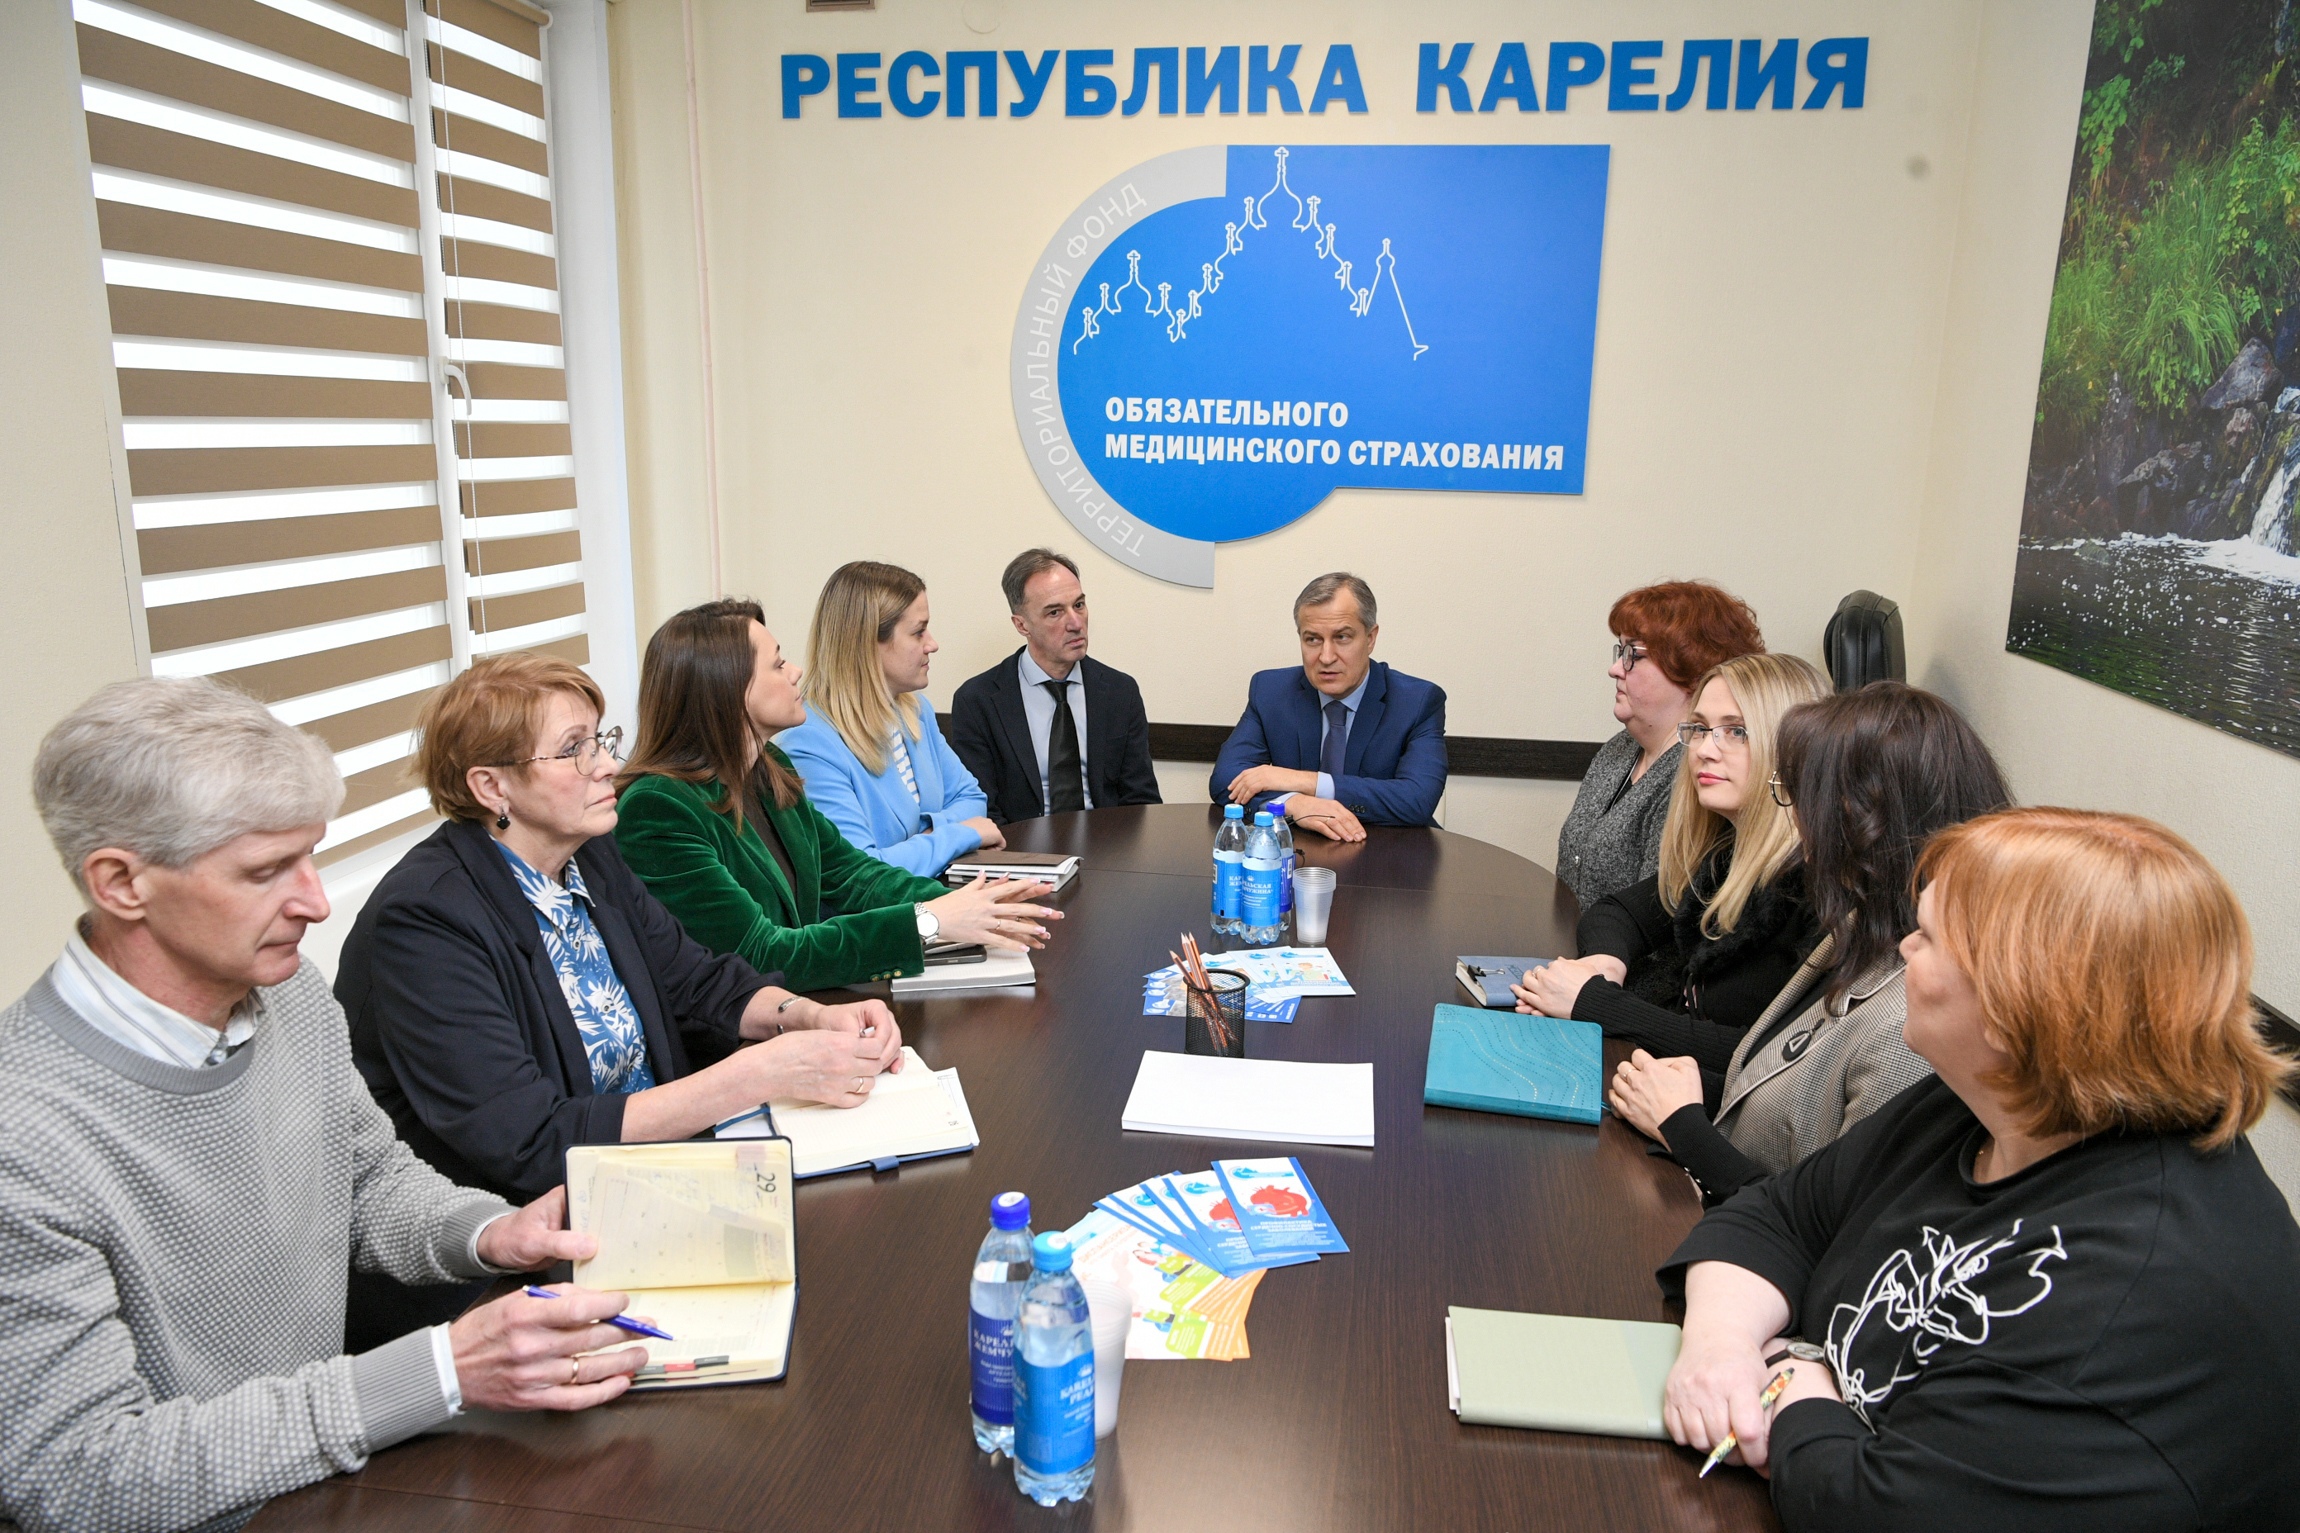 Александр Чепик представил нового руководителя Территориального фонда обязательного медицинского страхования Республики Карелия